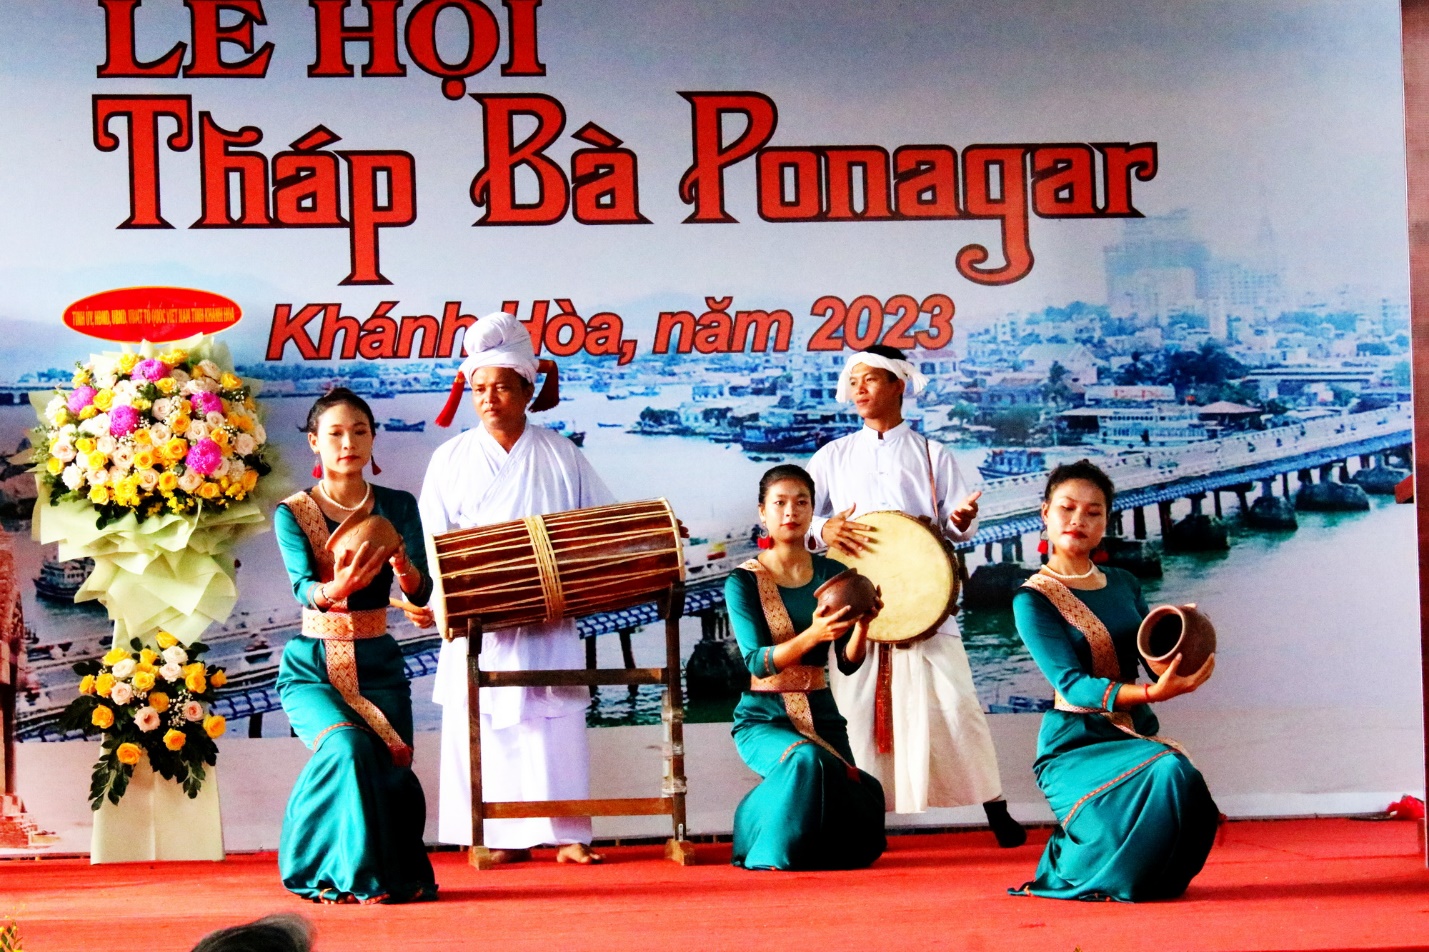 Đặc sắc lễ hội Tháp Bà Ponagar tưởng nhớ Thiên Y A Na Thánh Mẫu - 2